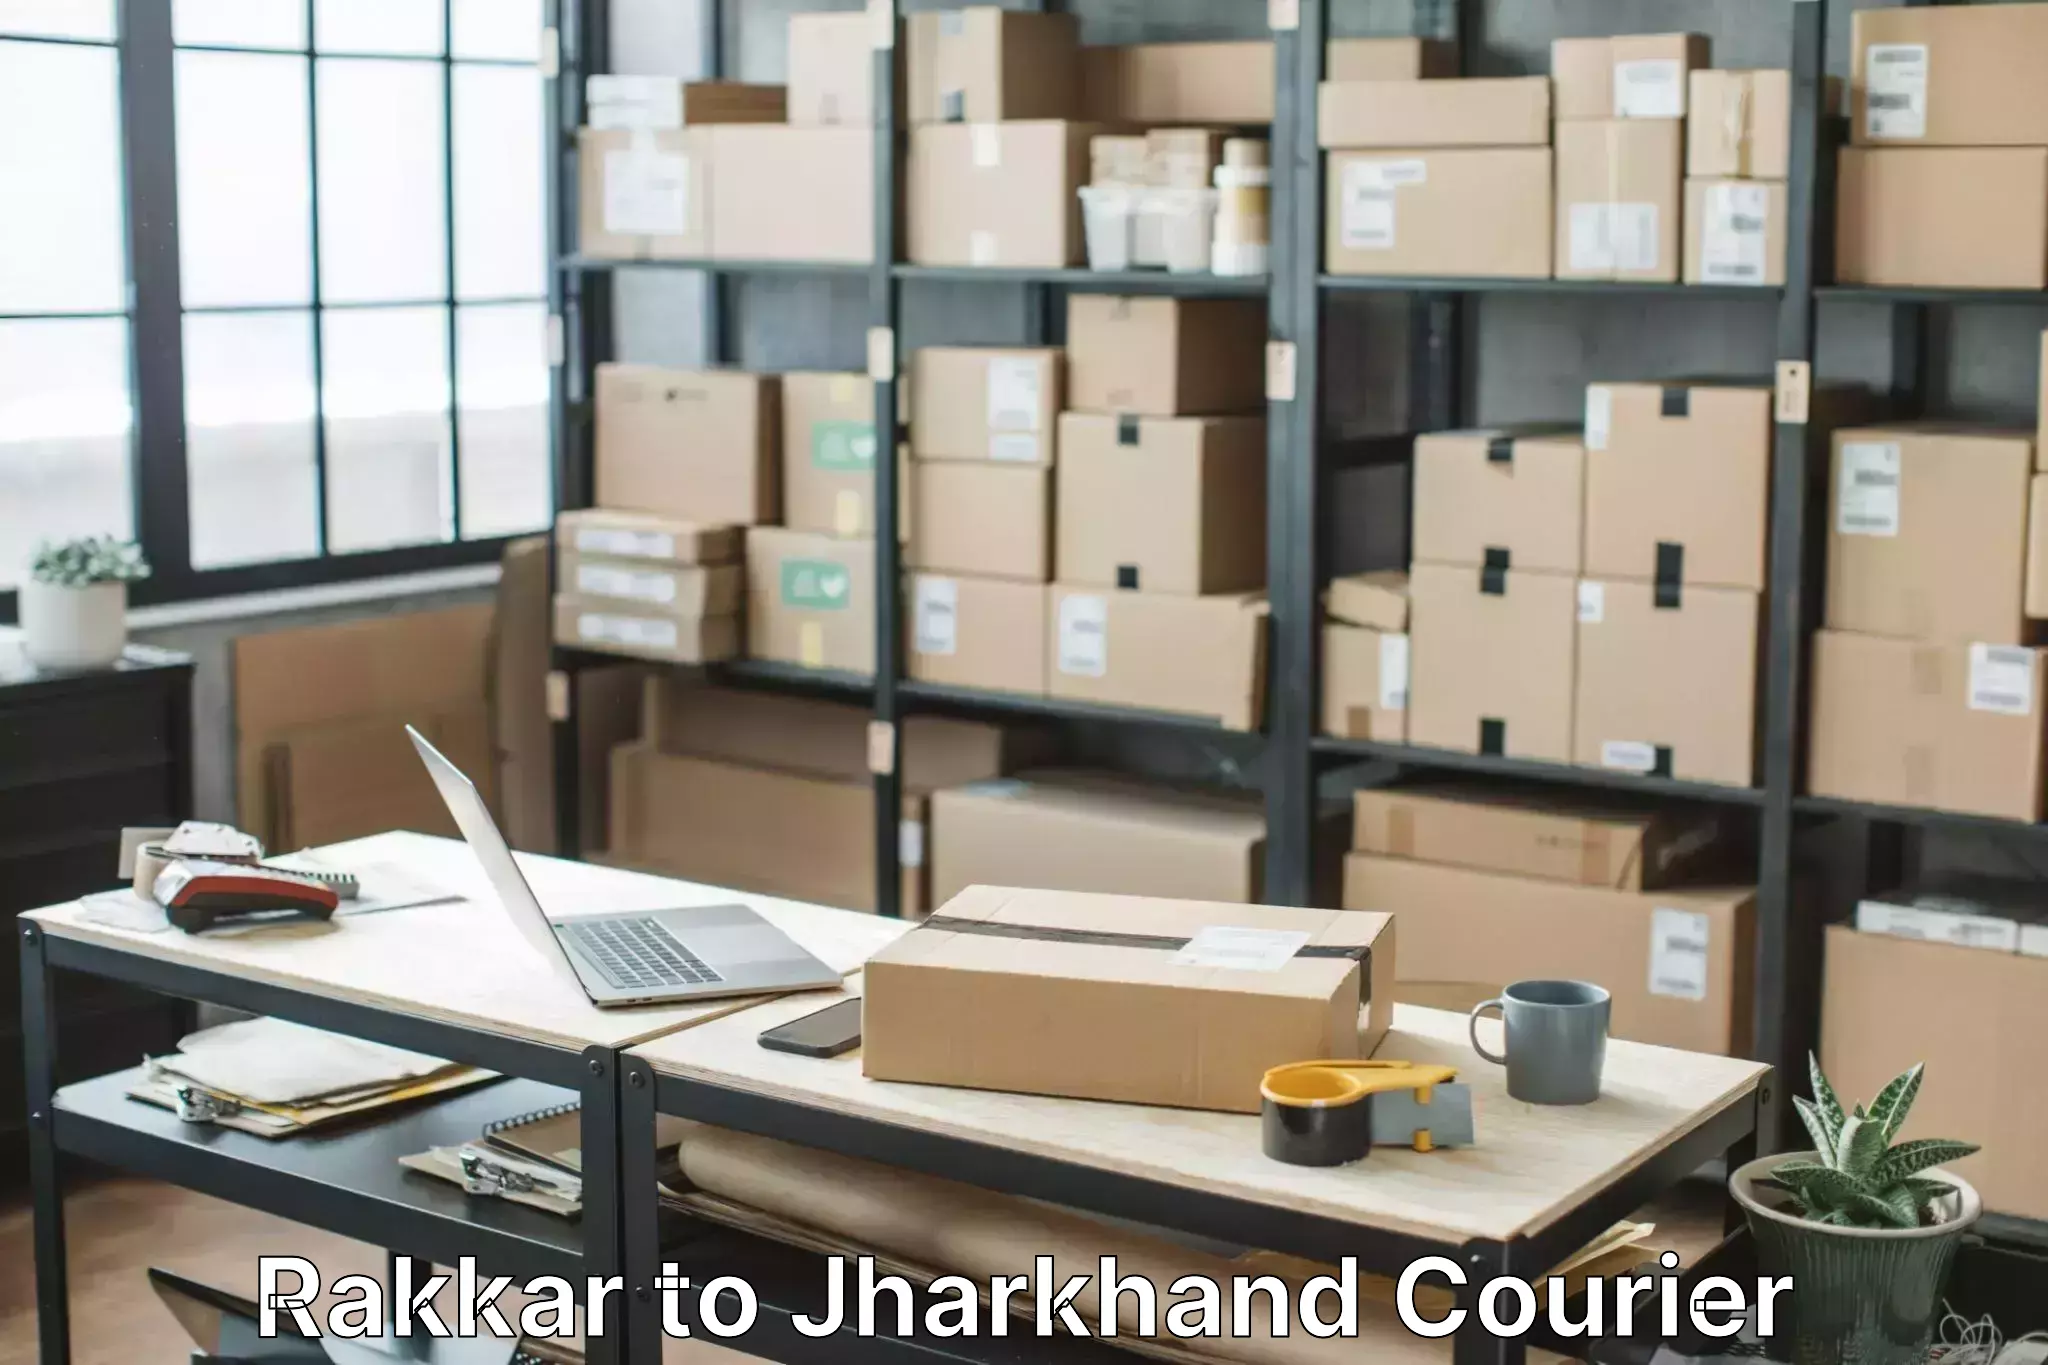 Efficient moving company Rakkar to Jharkhand